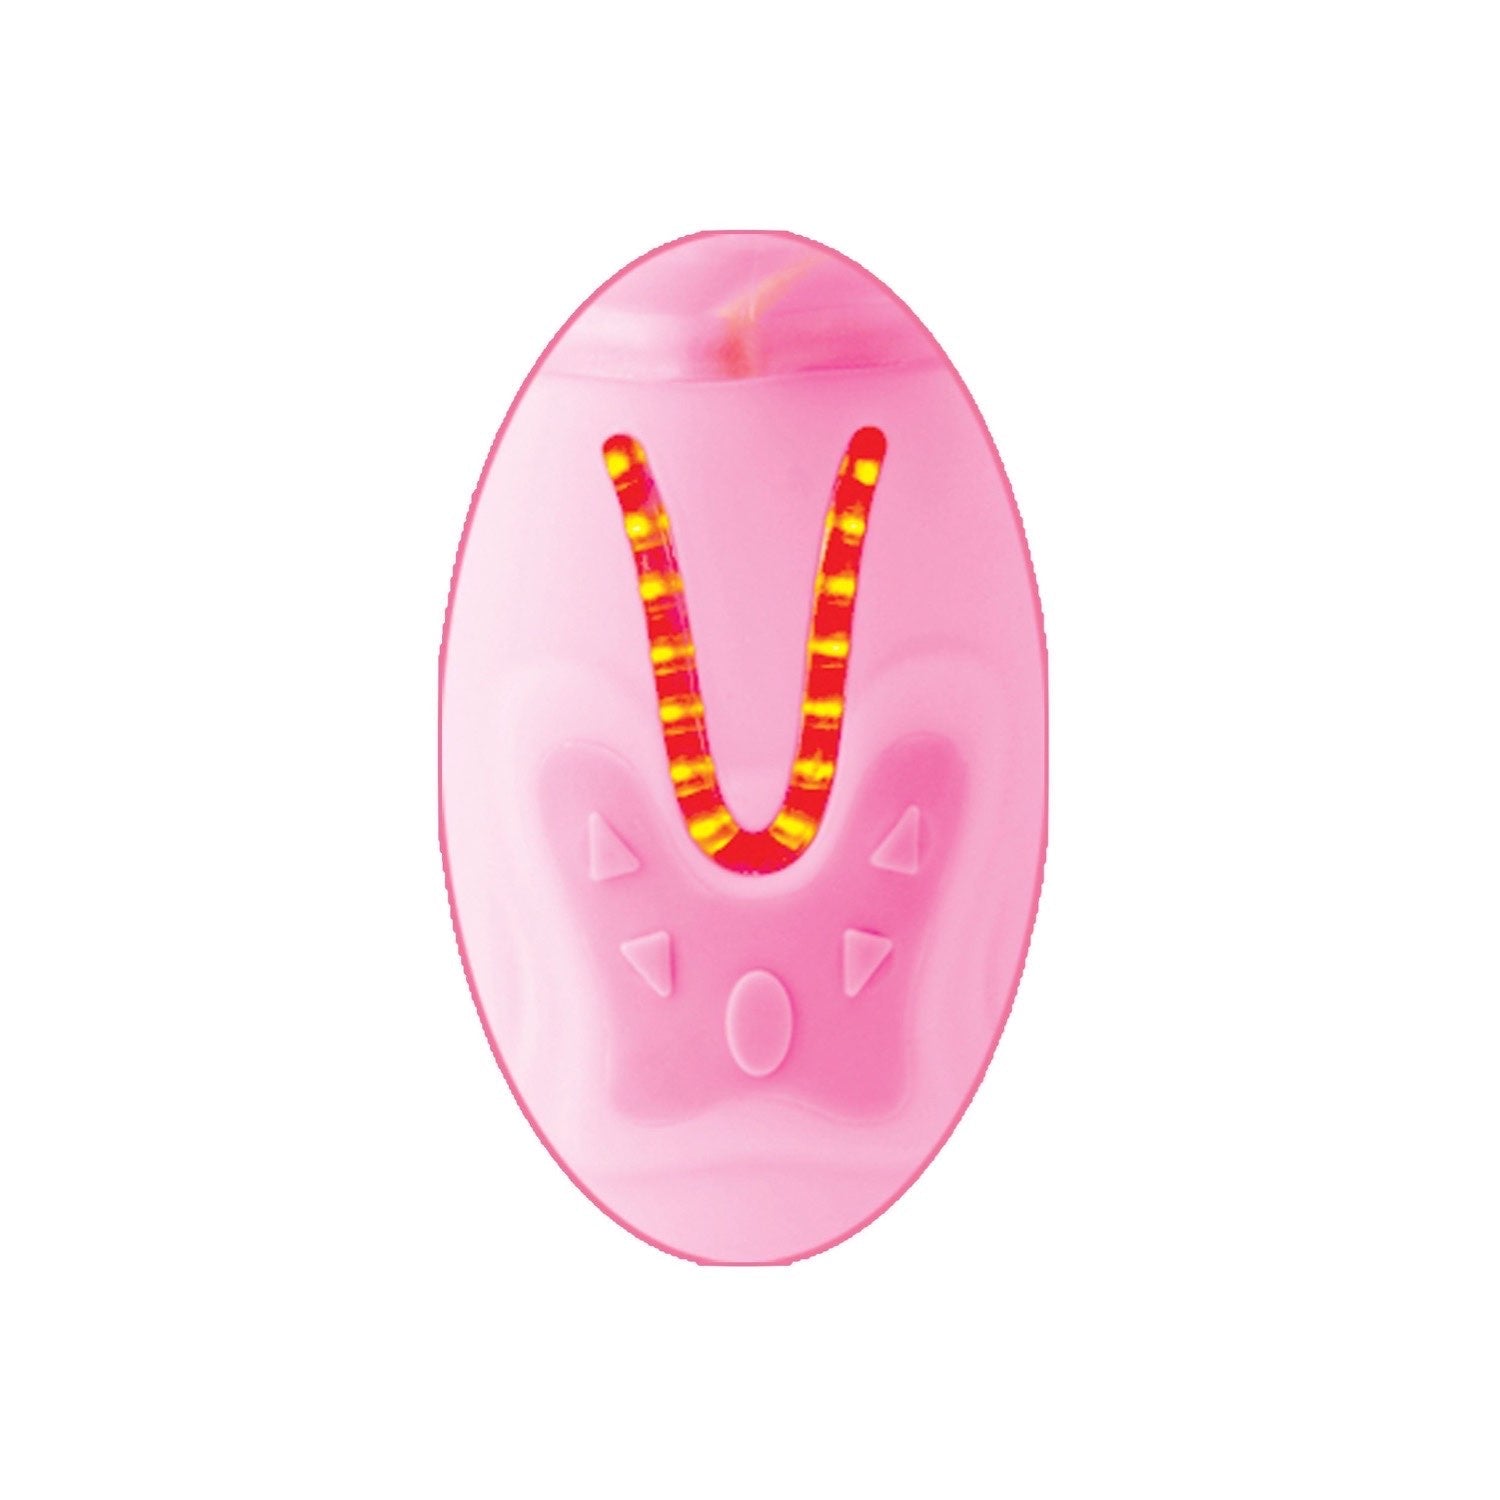  遥控推力兔子珍珠 - 粉色 10.25 英寸珍珠振动器，带兔子阴蒂刺激器 by Pipedream